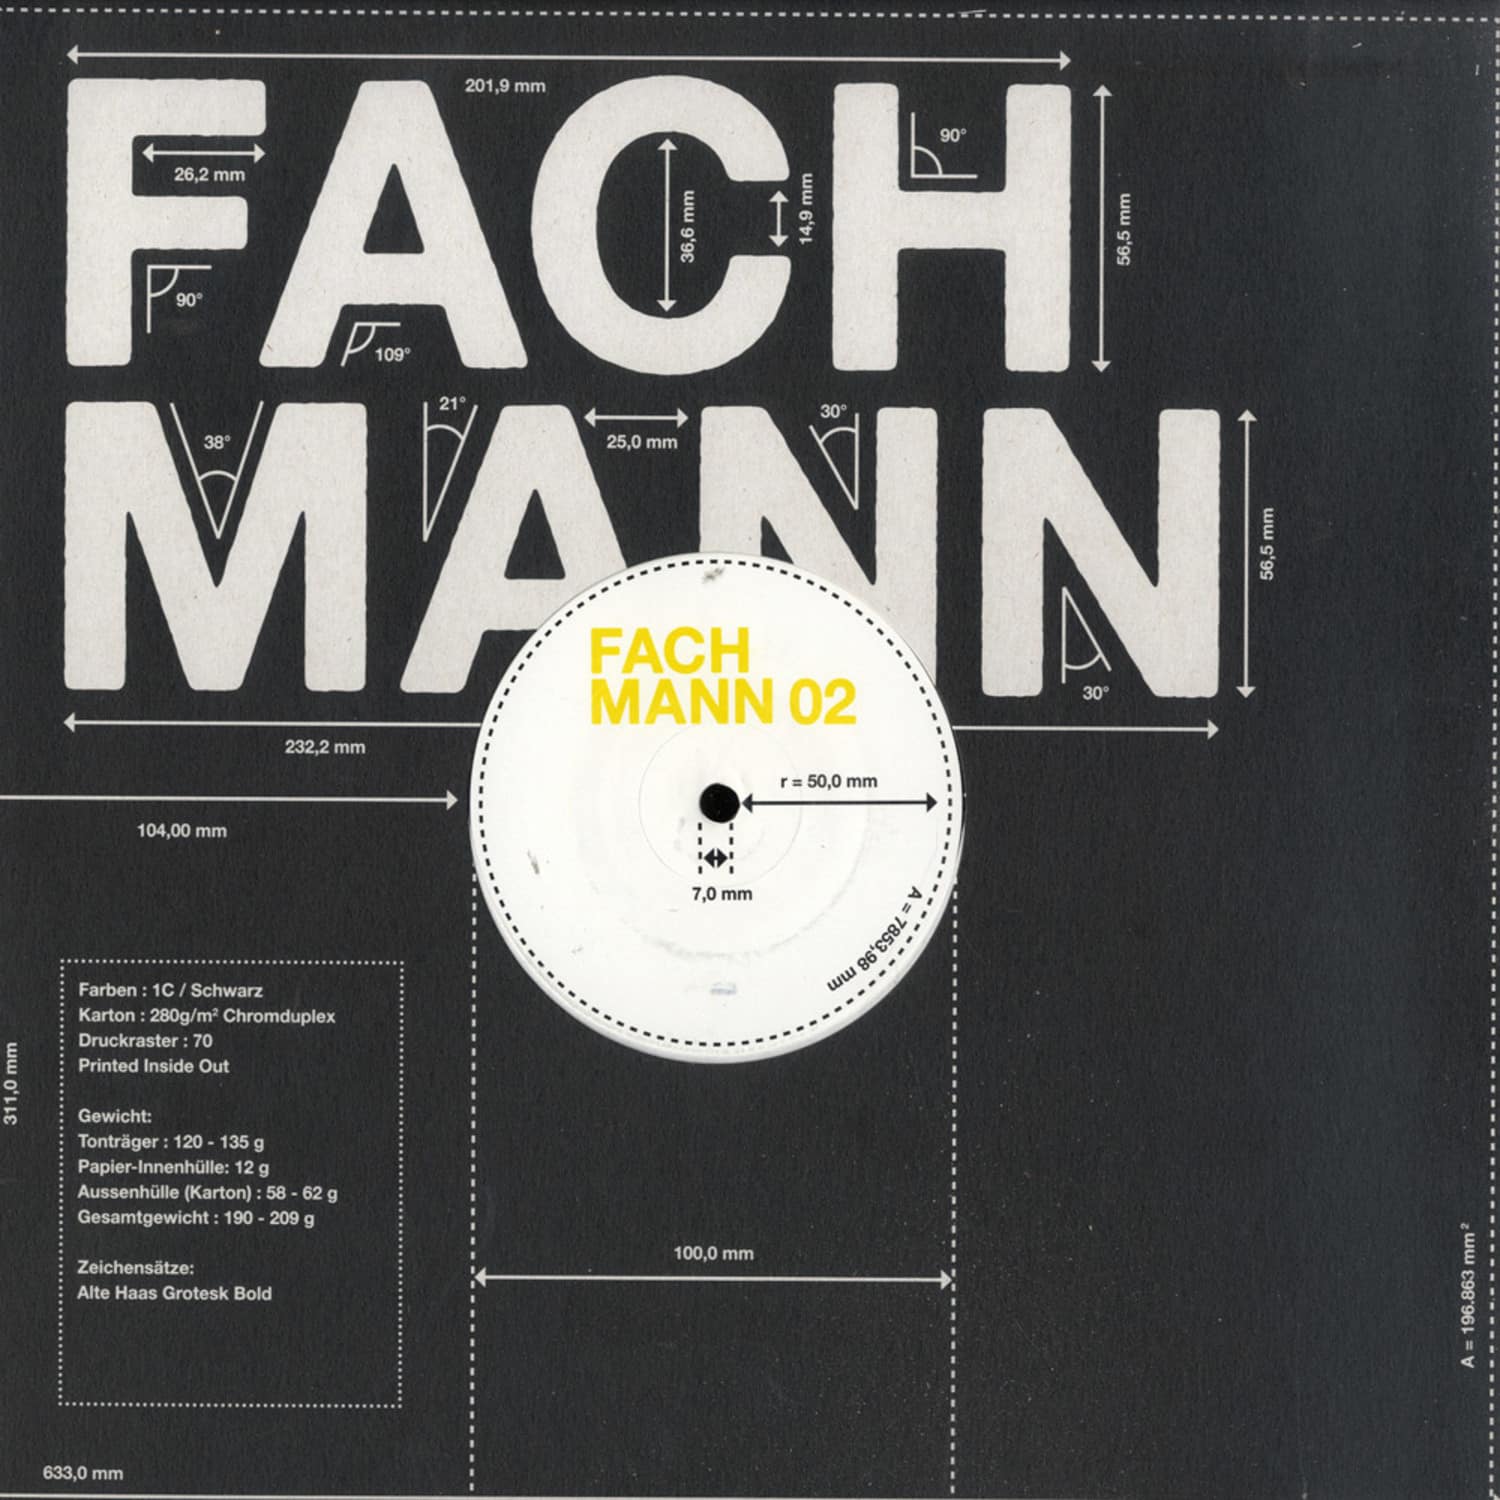 Fachmann - FACHMANN 02